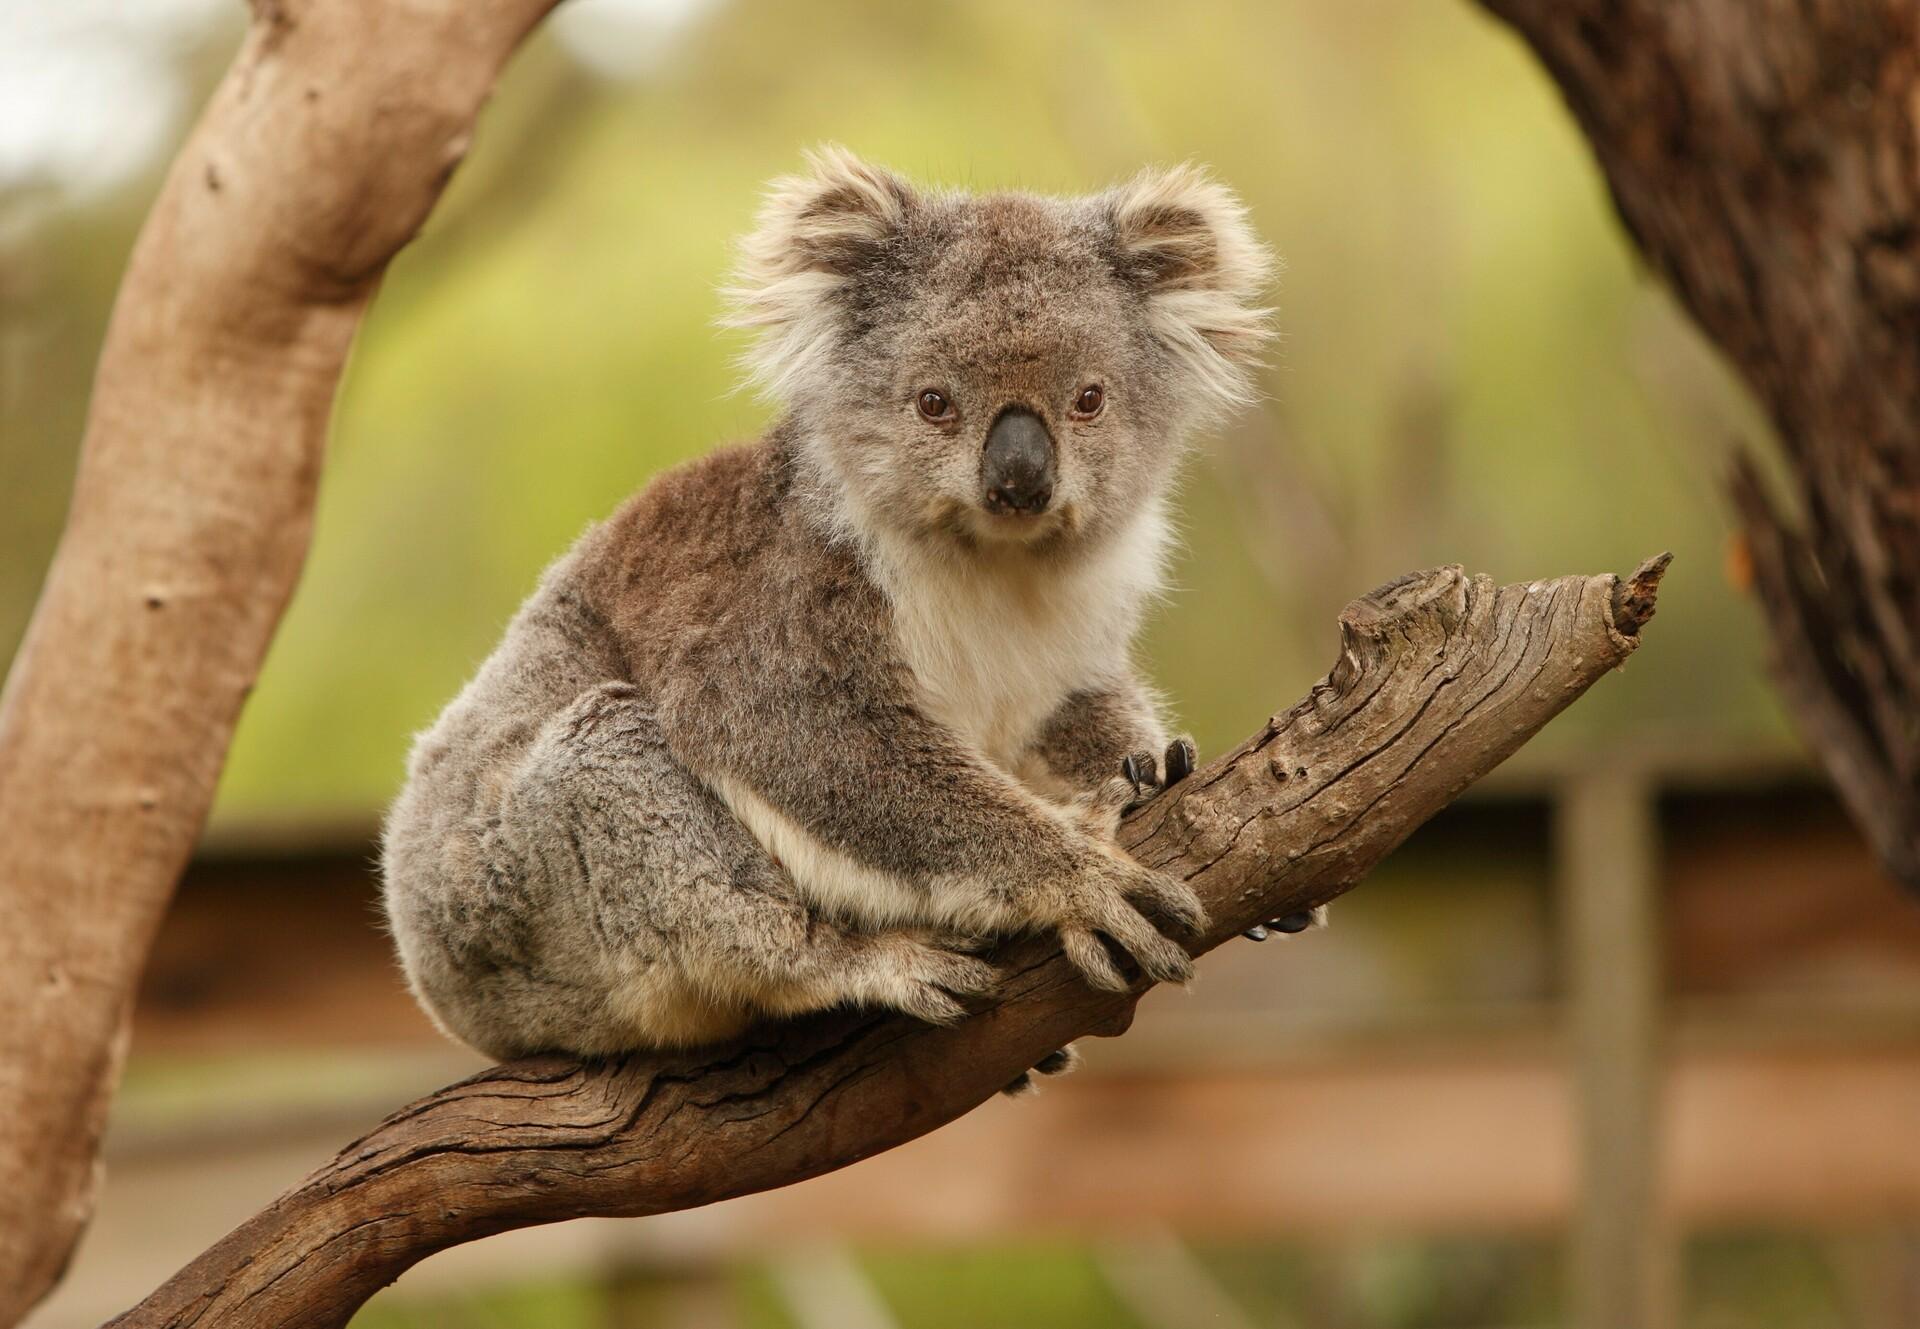 Animal in australia